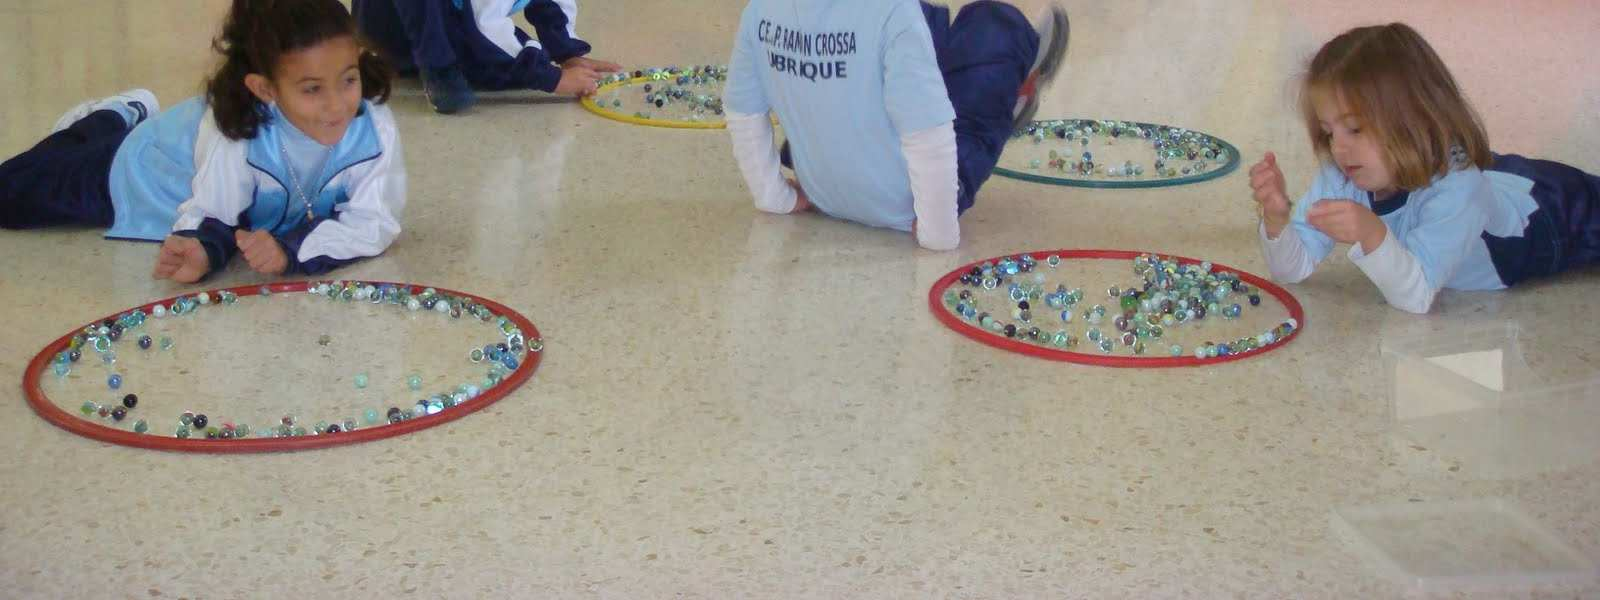 Disfruta con la práctica del ajedrez PERCEPTIVO MOTRIZ La Educación perceptivo-motriz trata de estimular la psicomotricidad de los niños en sus diferentes ámbitos.